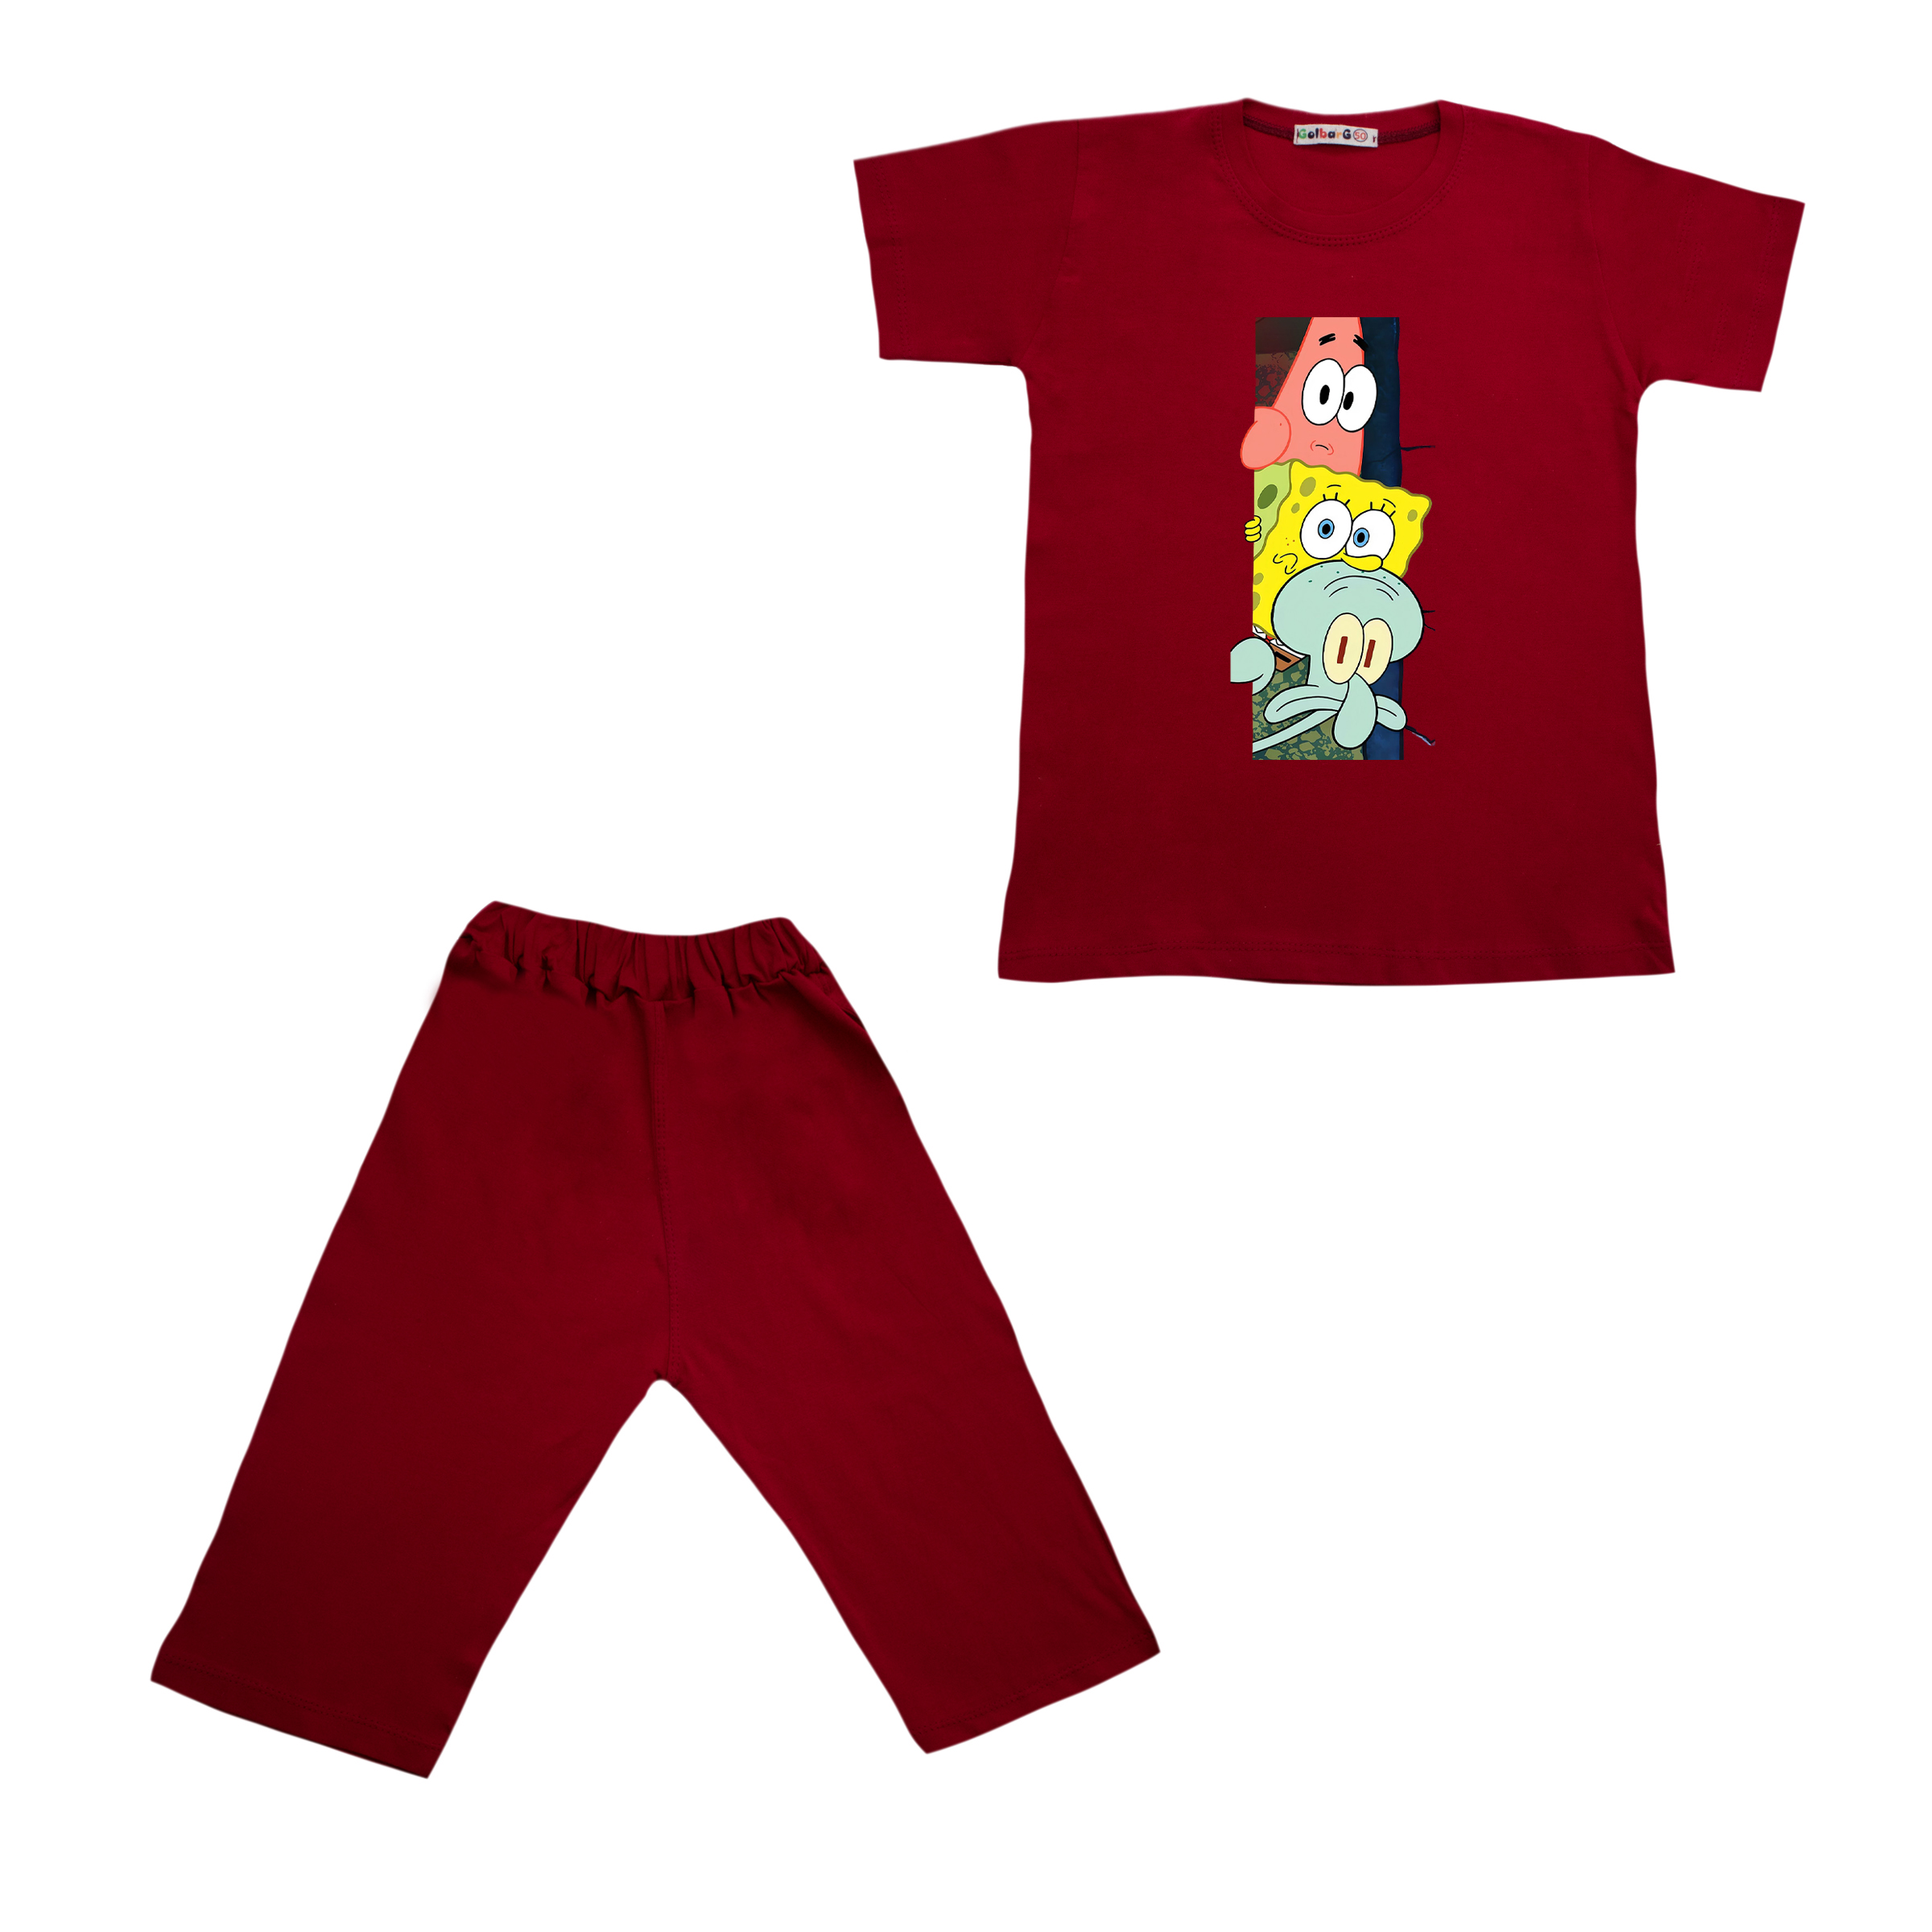 ست تی شرت و شلوارک بچگانه مدل باب اسفنجی